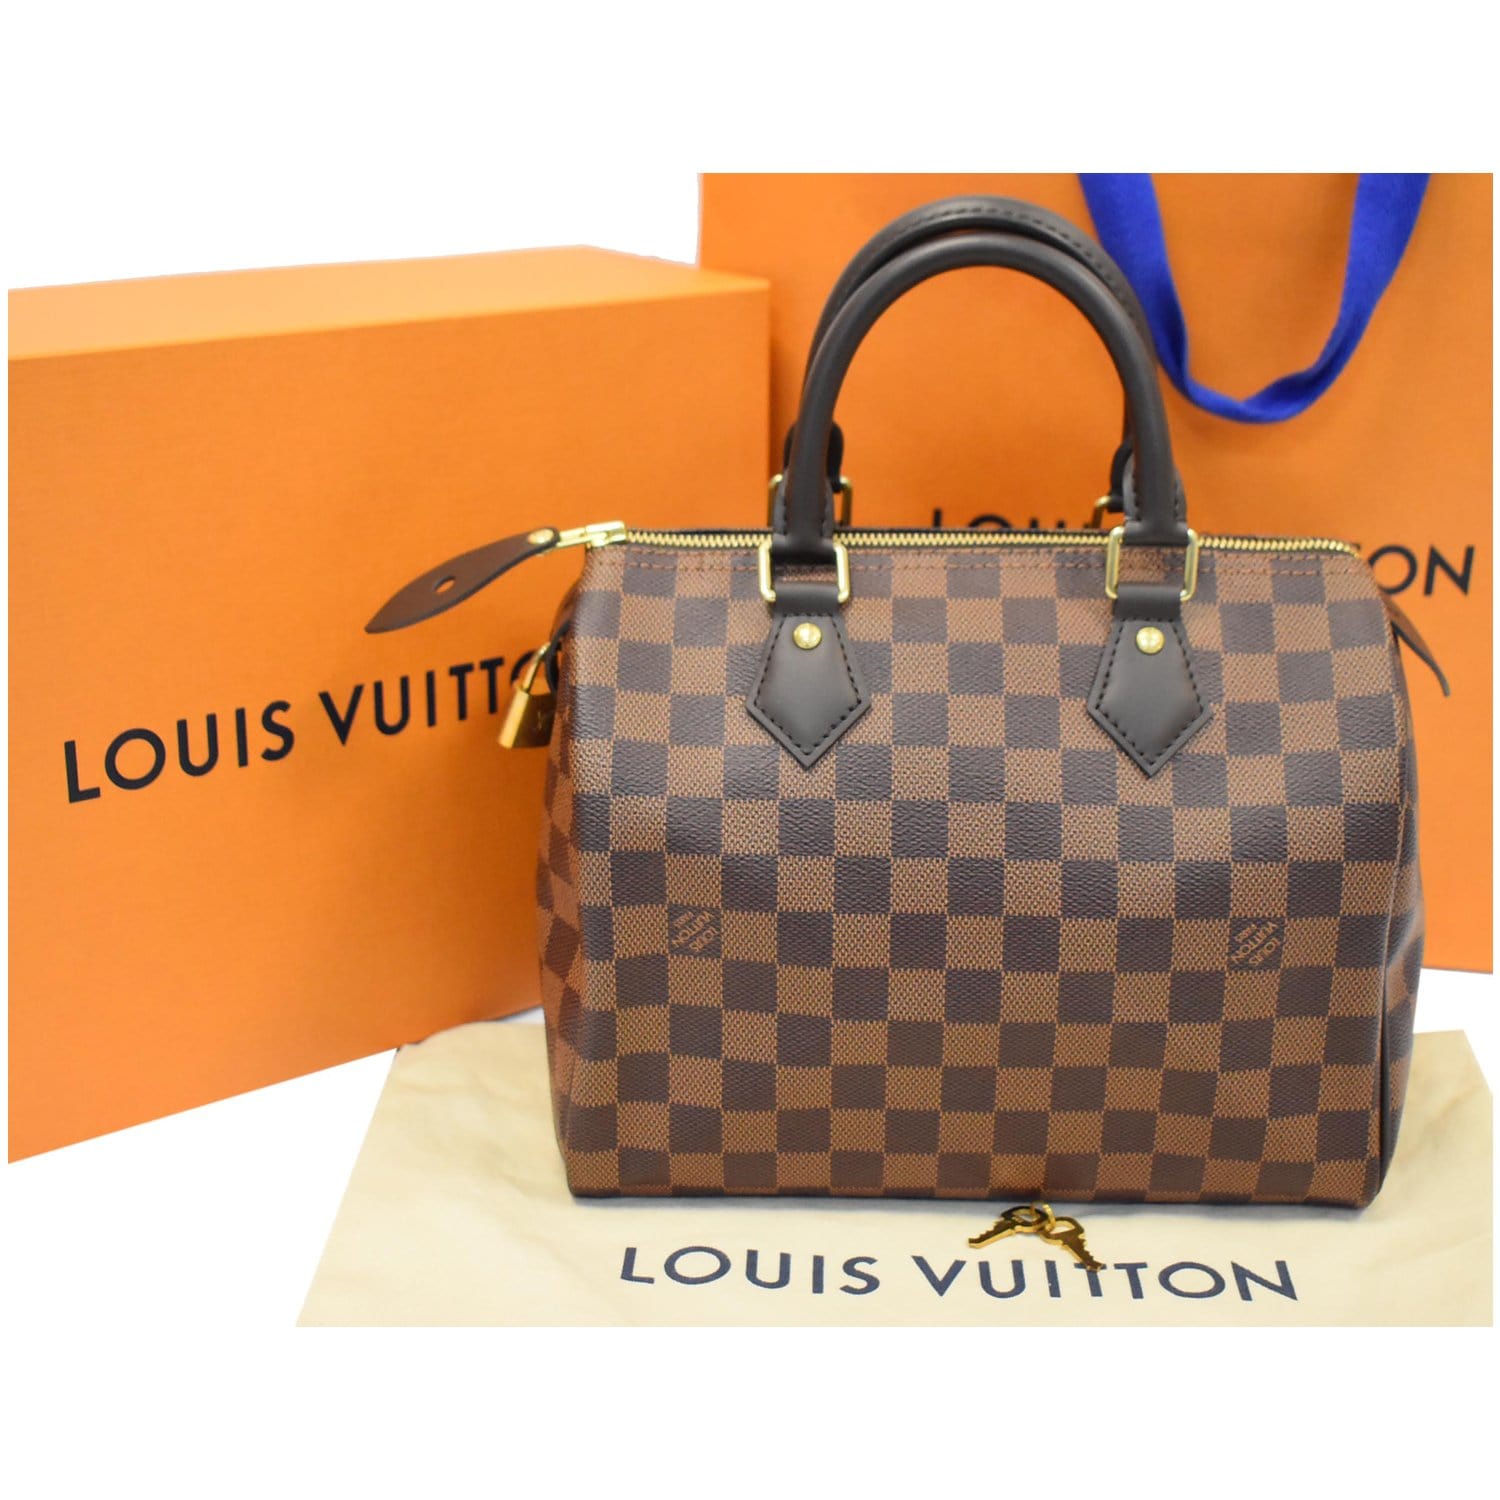 Louis Vuitton Speedy Damier Ebene (Without Accessories) 25 Brown